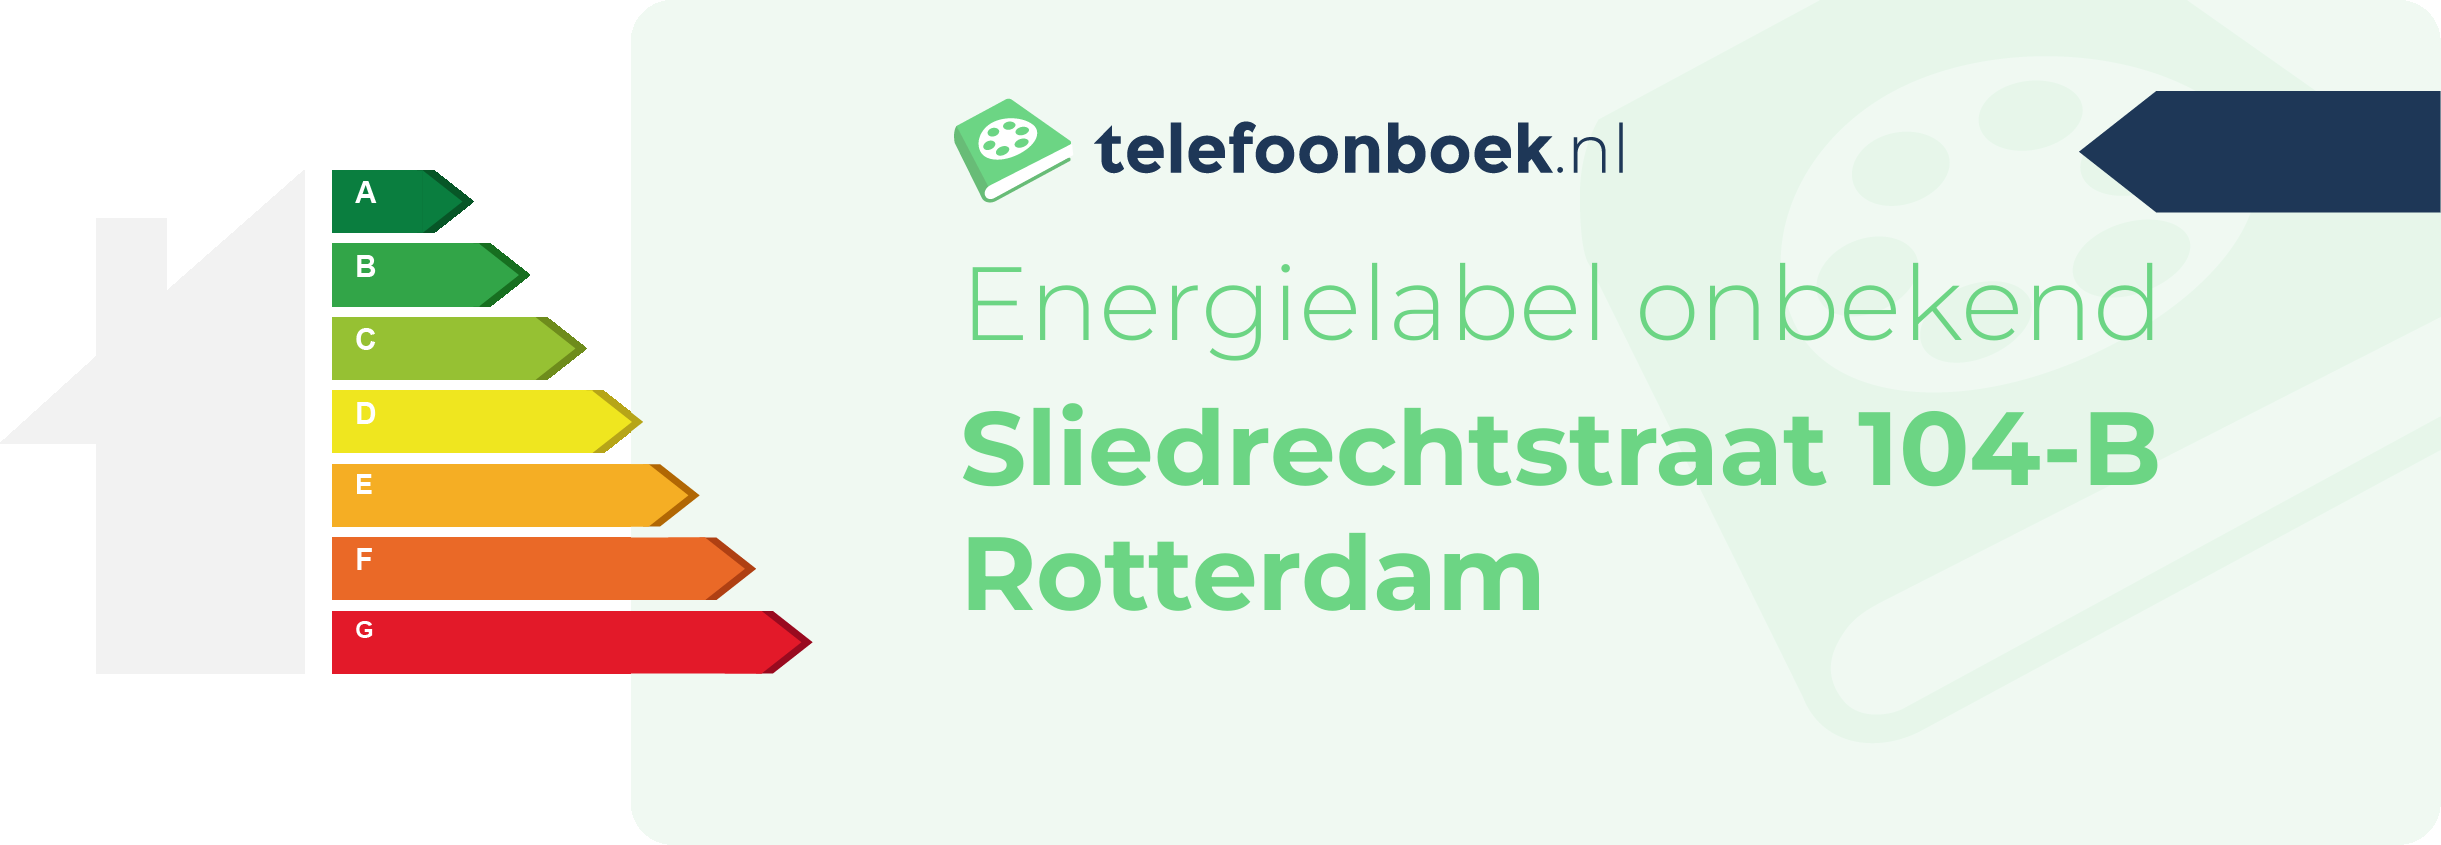 Energielabel Sliedrechtstraat 104-B Rotterdam